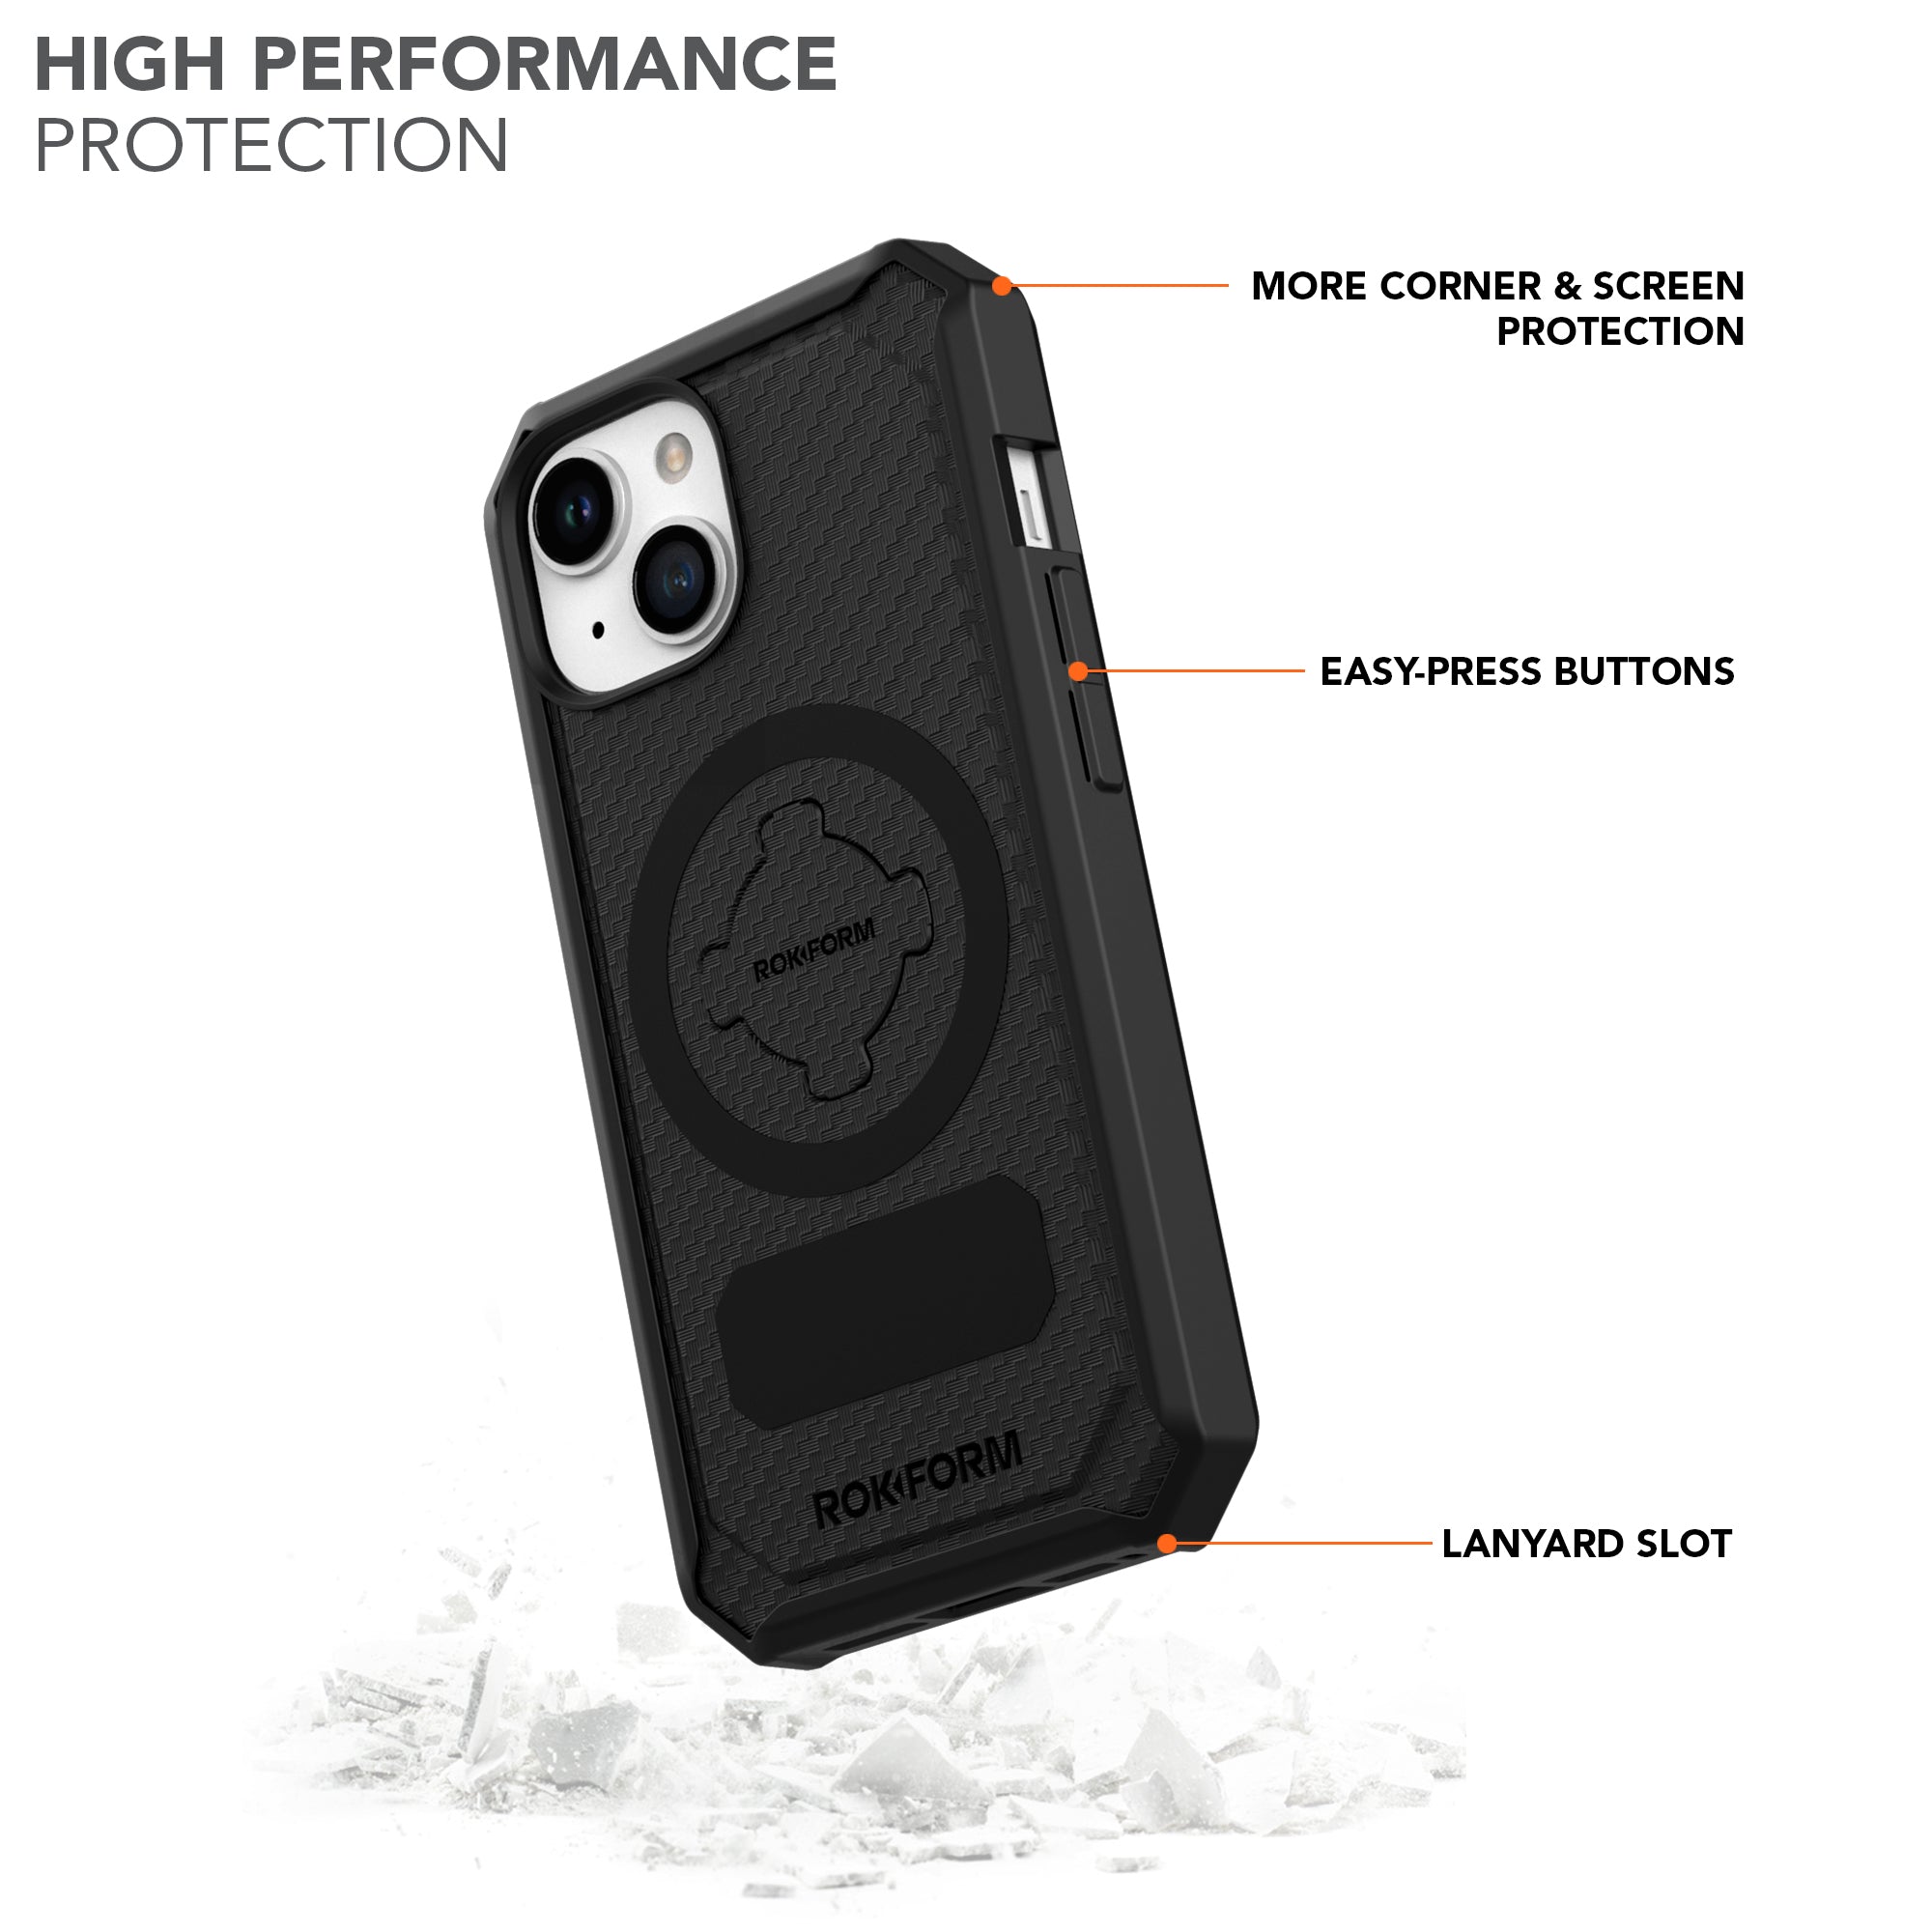 LOUIS VUITTON LV BLACK LOGO iPhone 15 Pro Case Cover